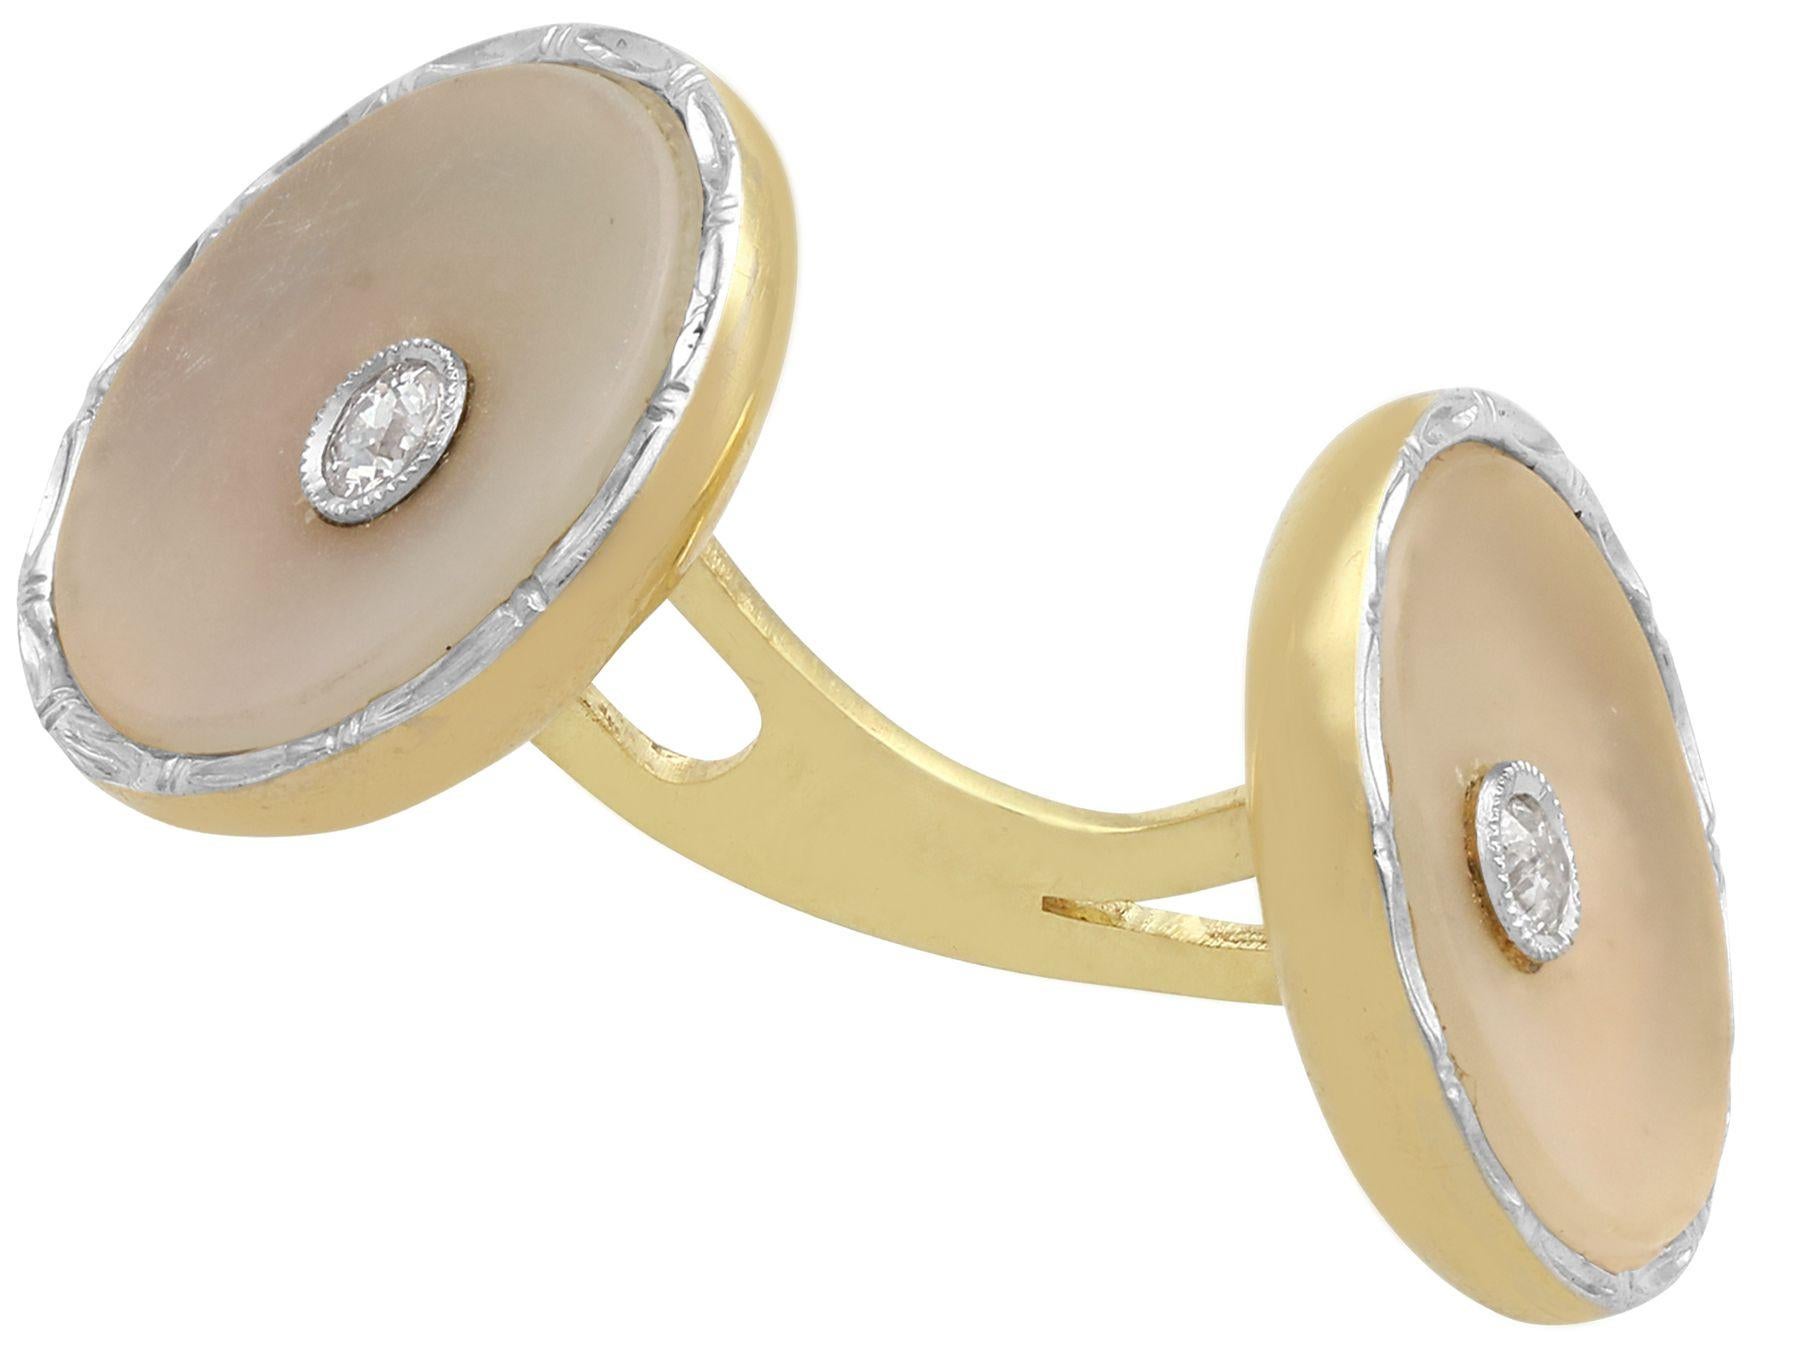 Une belle et impressionnante paire de boutons de manchette et de colliers en diamant et cristal, en or jaune 14 carats et en platine, faisant partie de nos collections de bijoux anciens et de bijoux de succession.

Ces boutons de manchette et